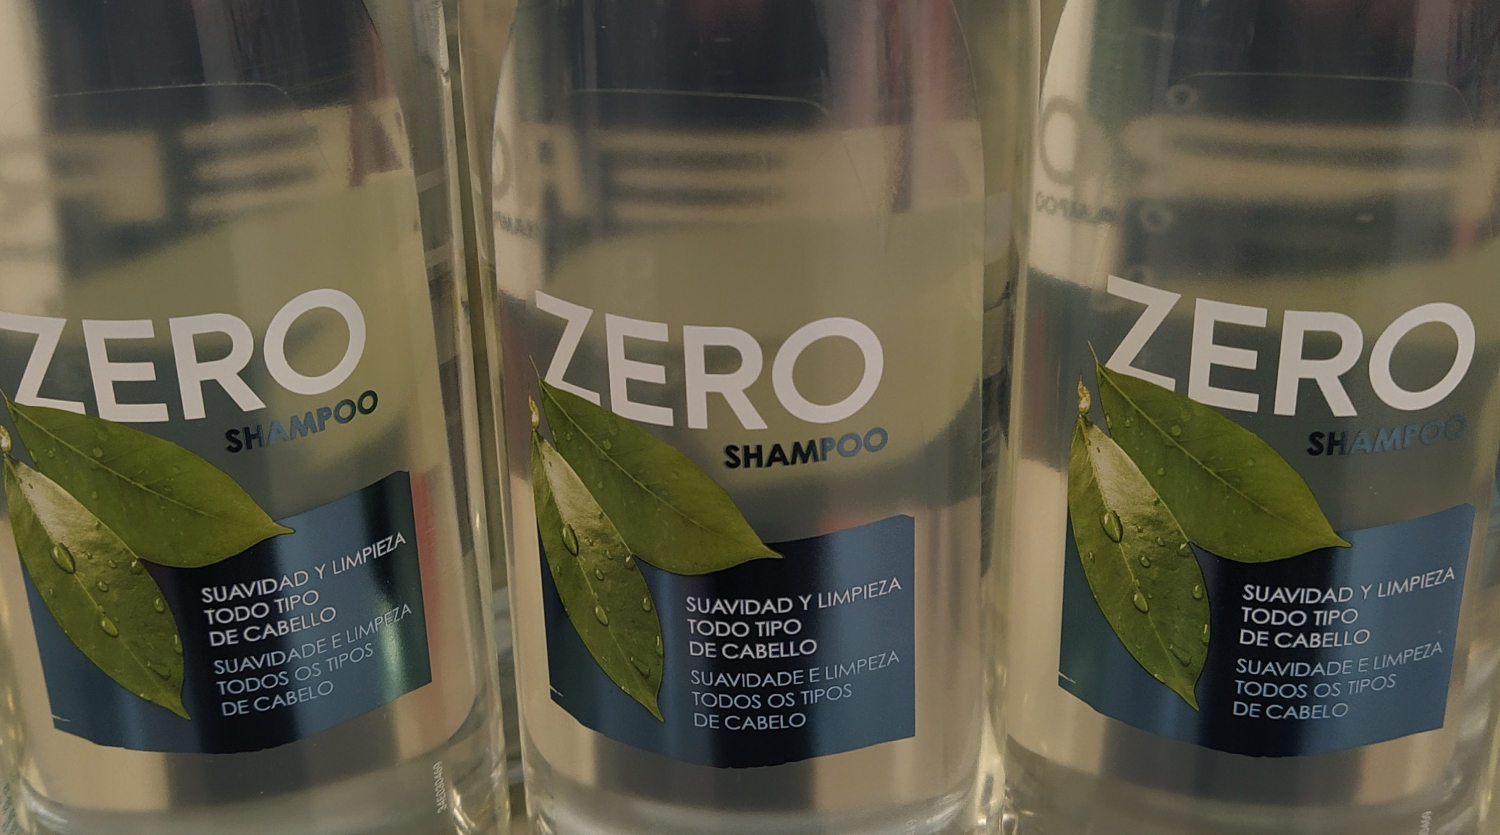 Opinión: Zero, el champú de Mercadona sin sulfatos ni siliconas